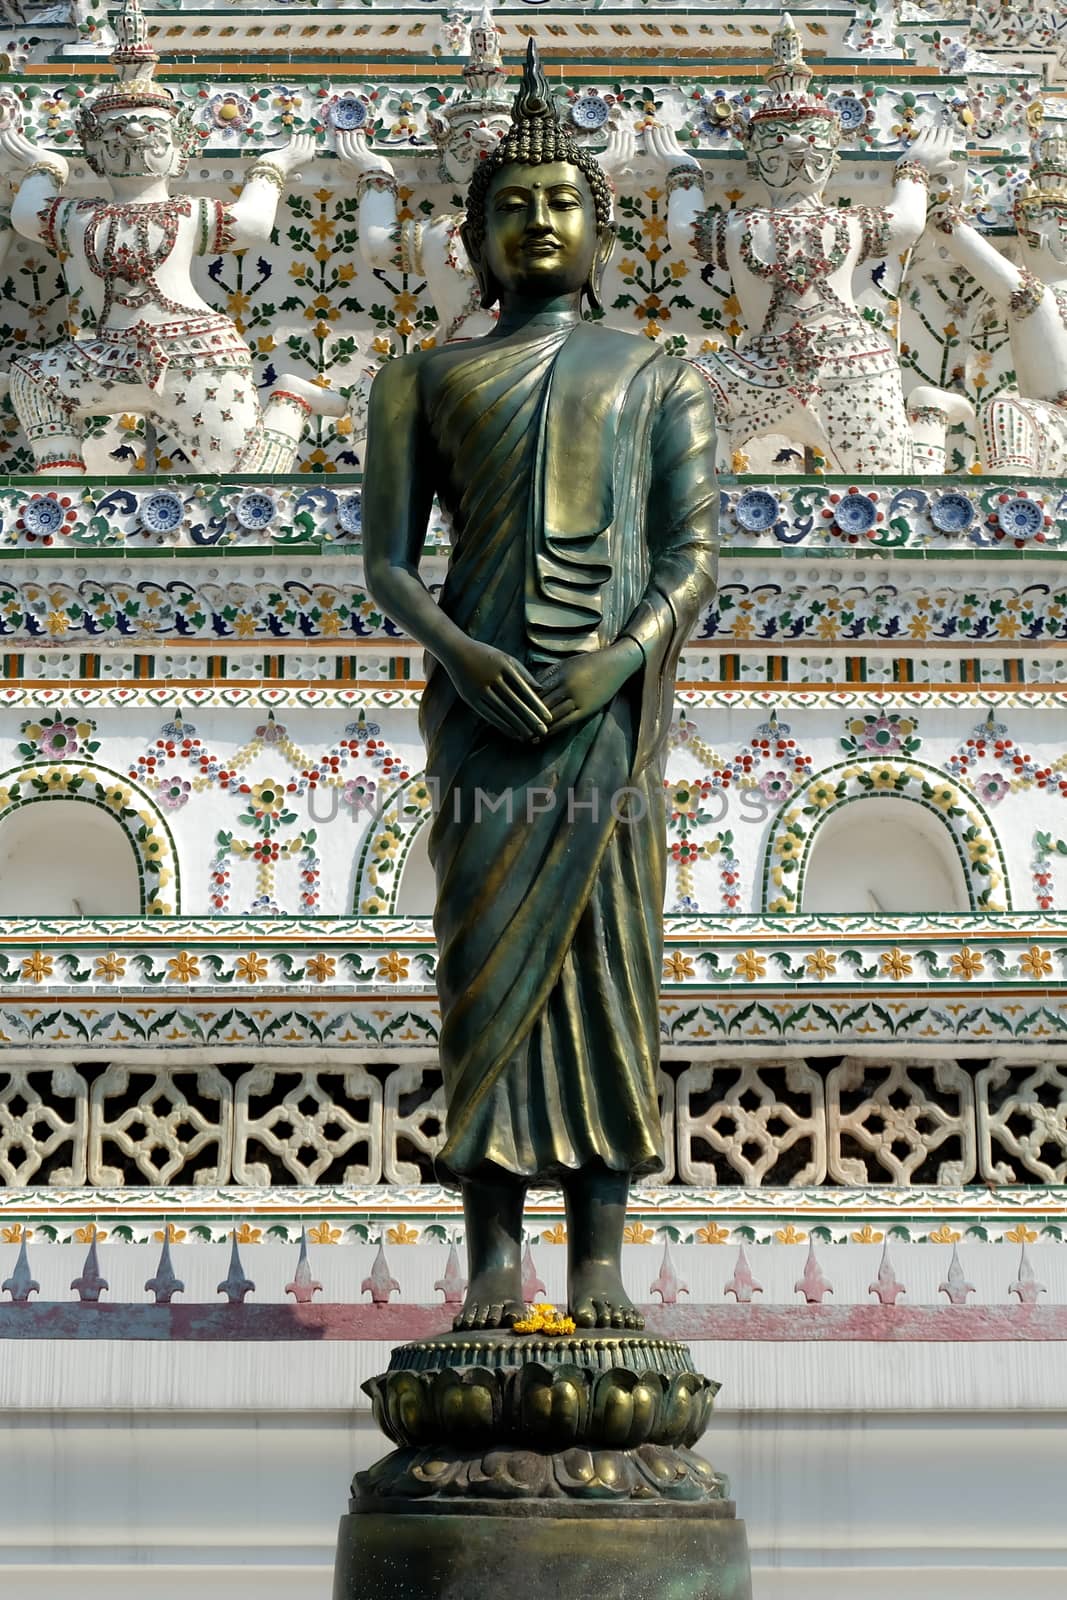 Ancient Bronze Buddha Image at Wat Arun Bangkok, Thailand. by mesamong